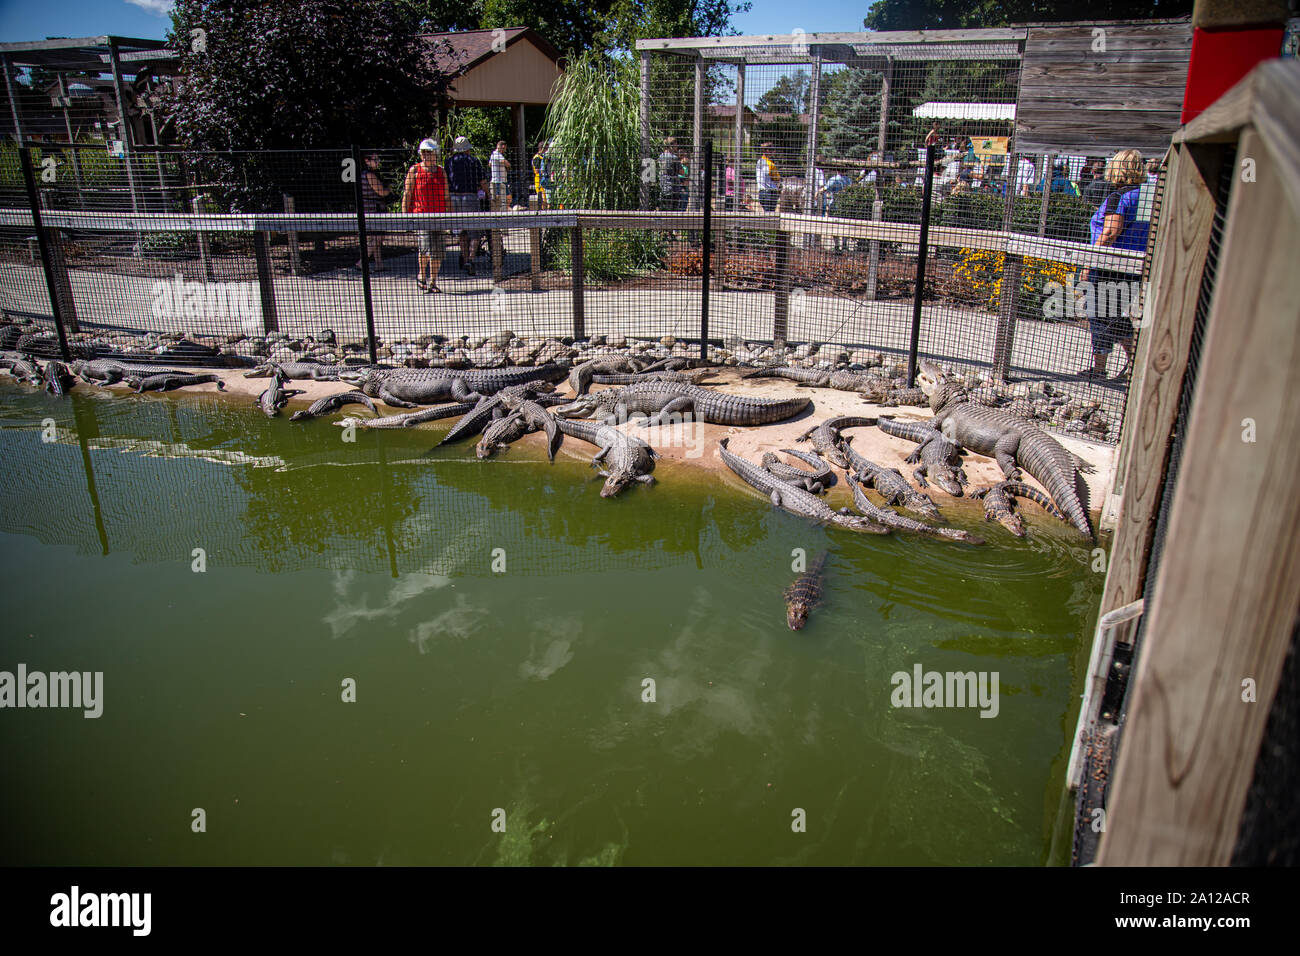 Une congrégation d'alligators américains reposant à côté d'un étang à l'enceinte d'un zoo privé dans le Michigan. Banque D'Images